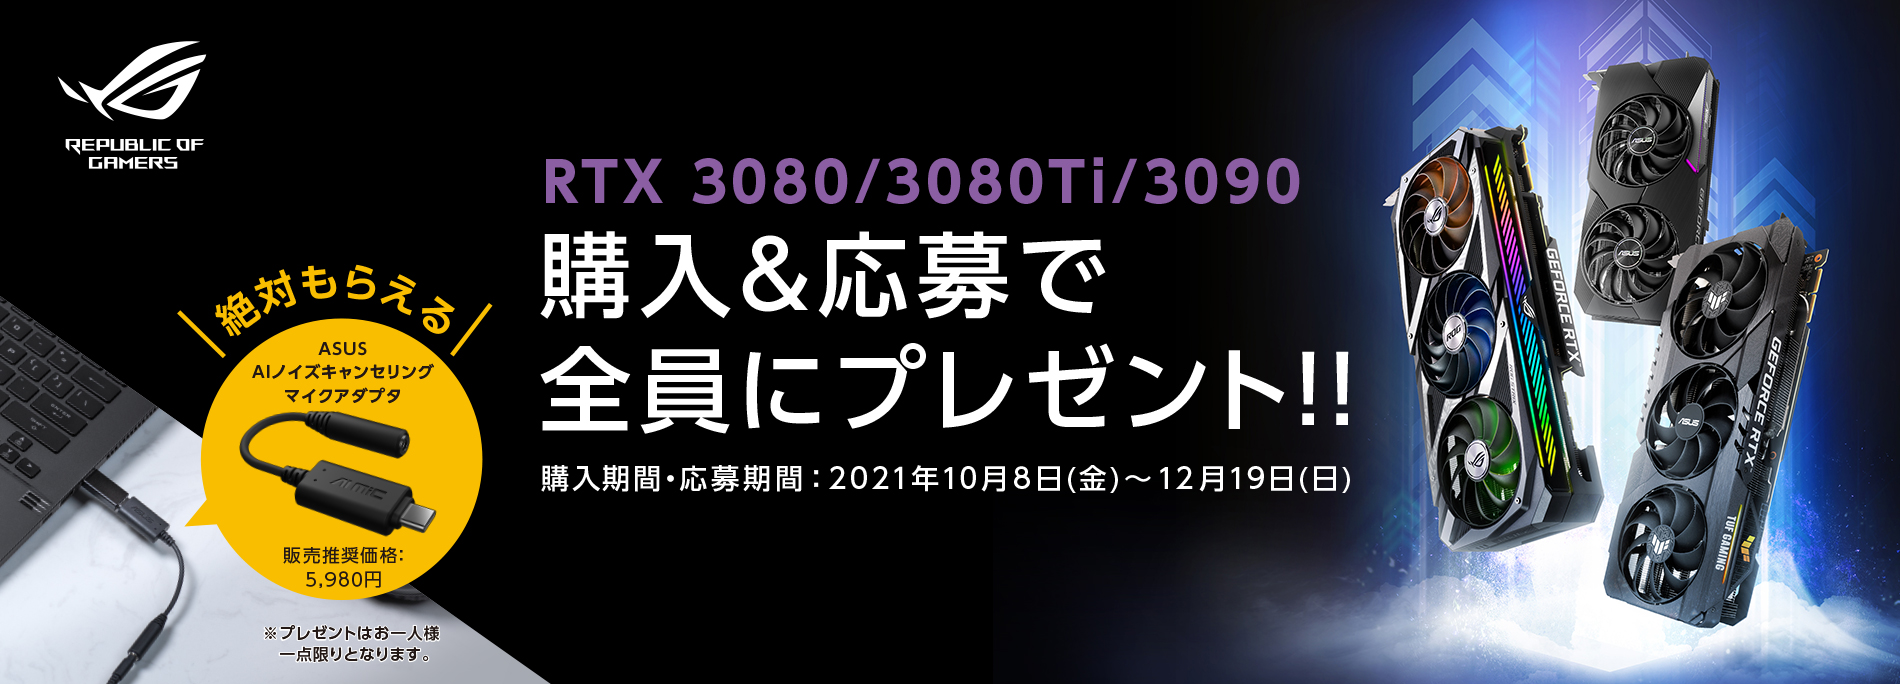 ASUS ビデオカード RTX3080 /3080Ti /3090 購入キャンペーン